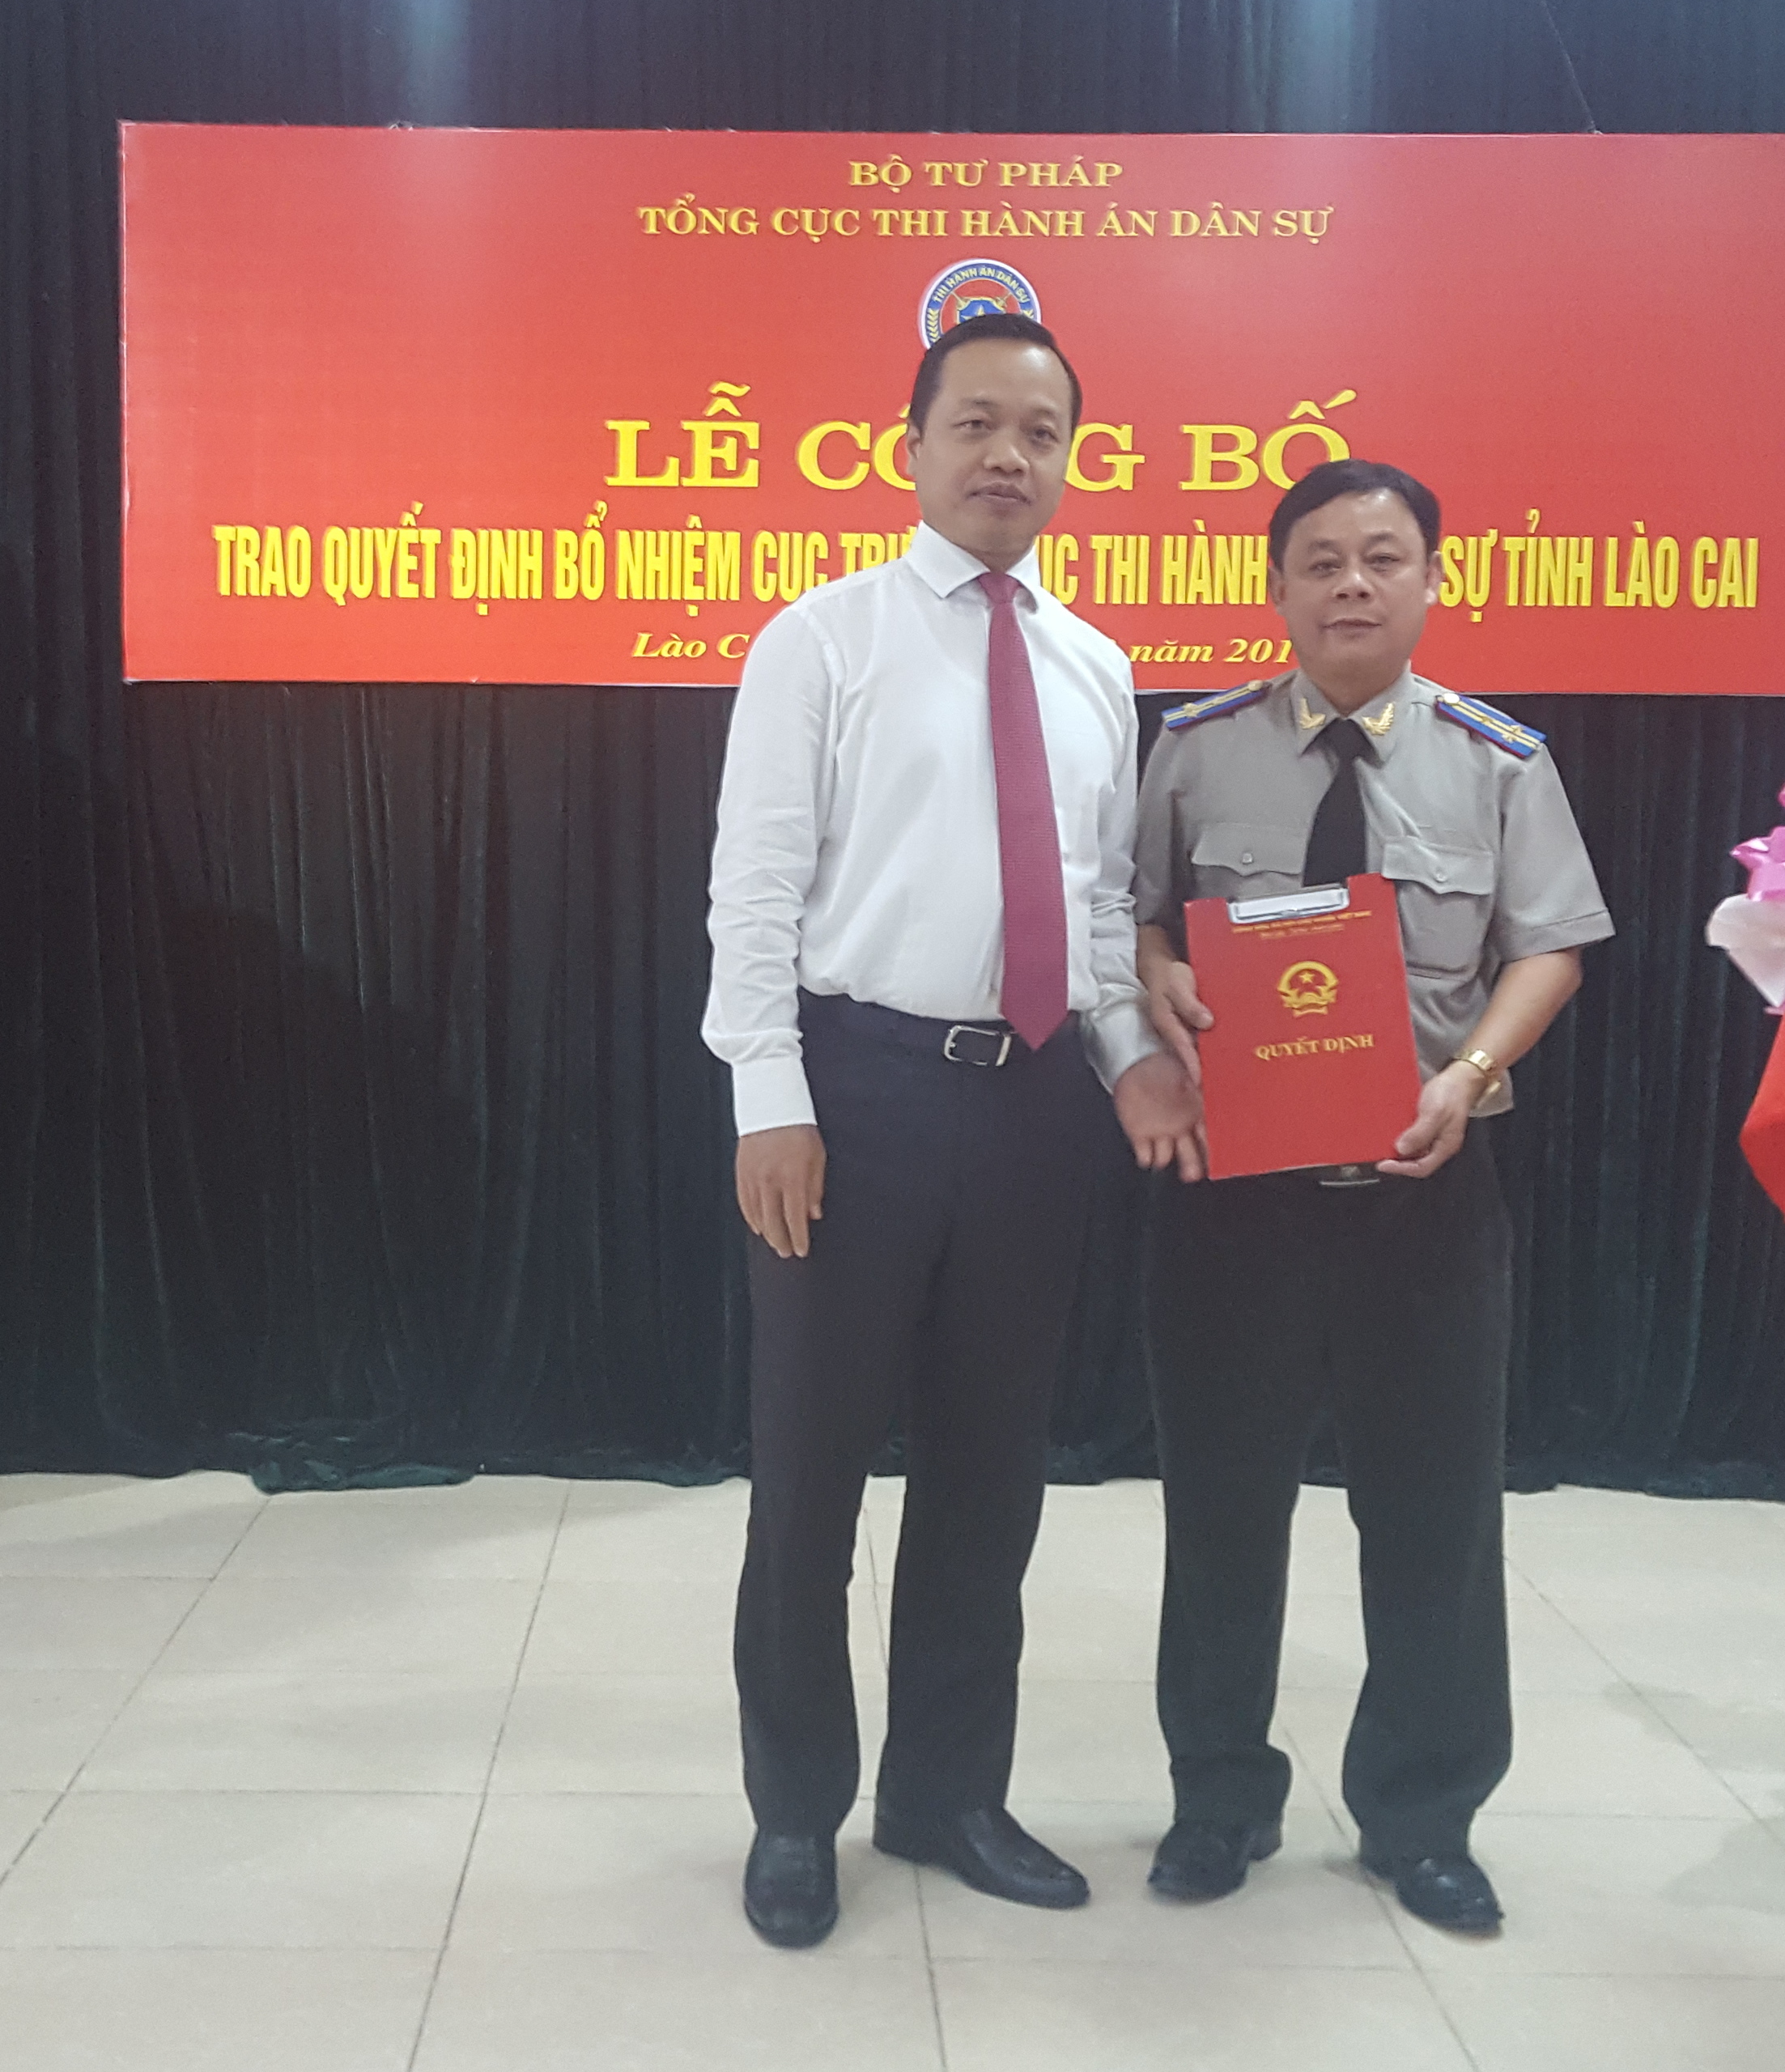 Đồng chí Trần Tiến Dũng, Ủy viên Ban Cán sự đảng, Thứ trưởng Bộ Tư pháp trao Quyết định Bổ nhiệm Cục trưởng cục THADS tỉnh Lào Cai